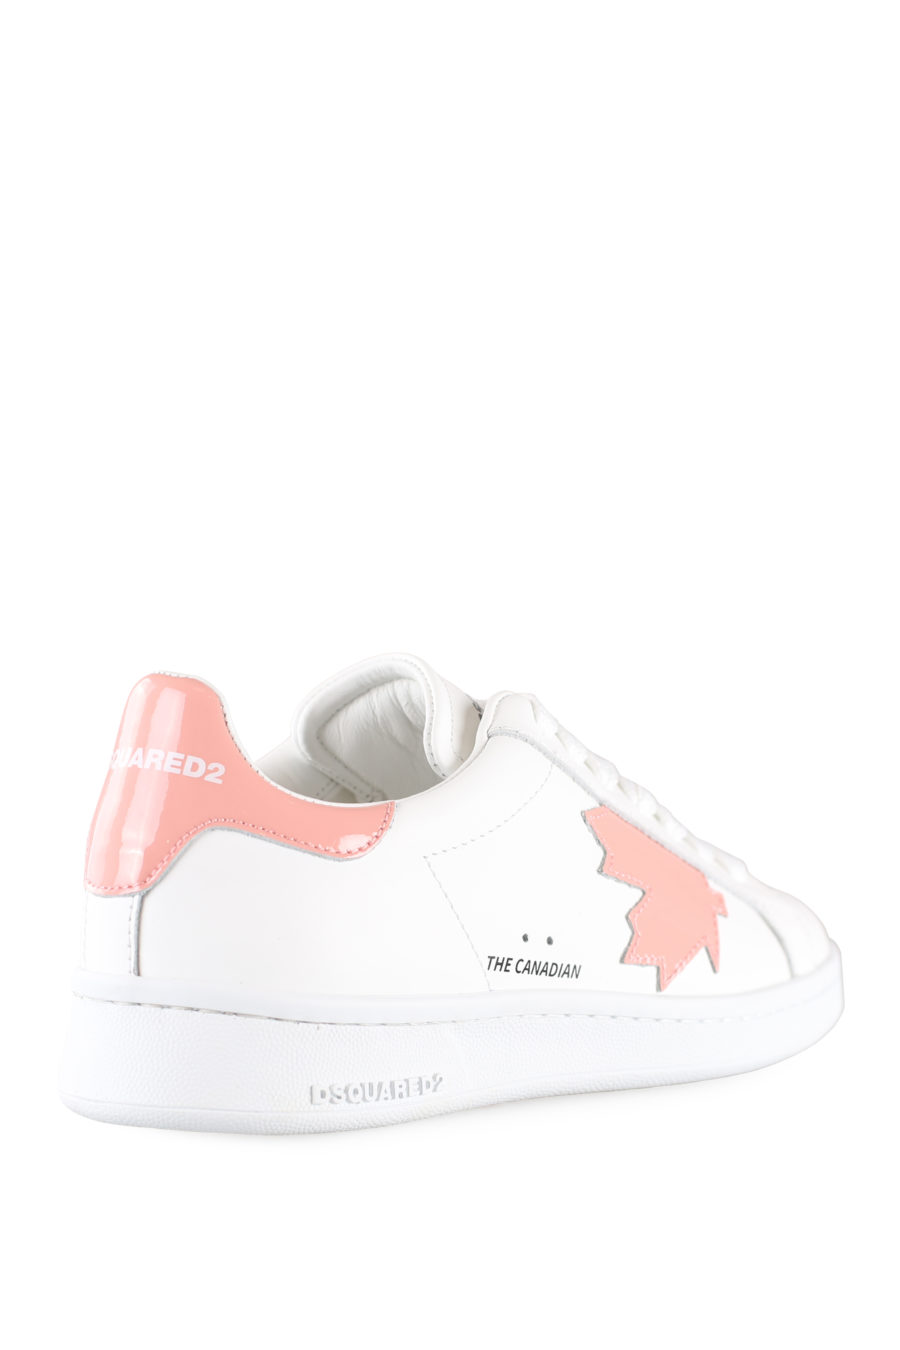 Zapatillas blancas con logo hoja rosa - IMG 0028